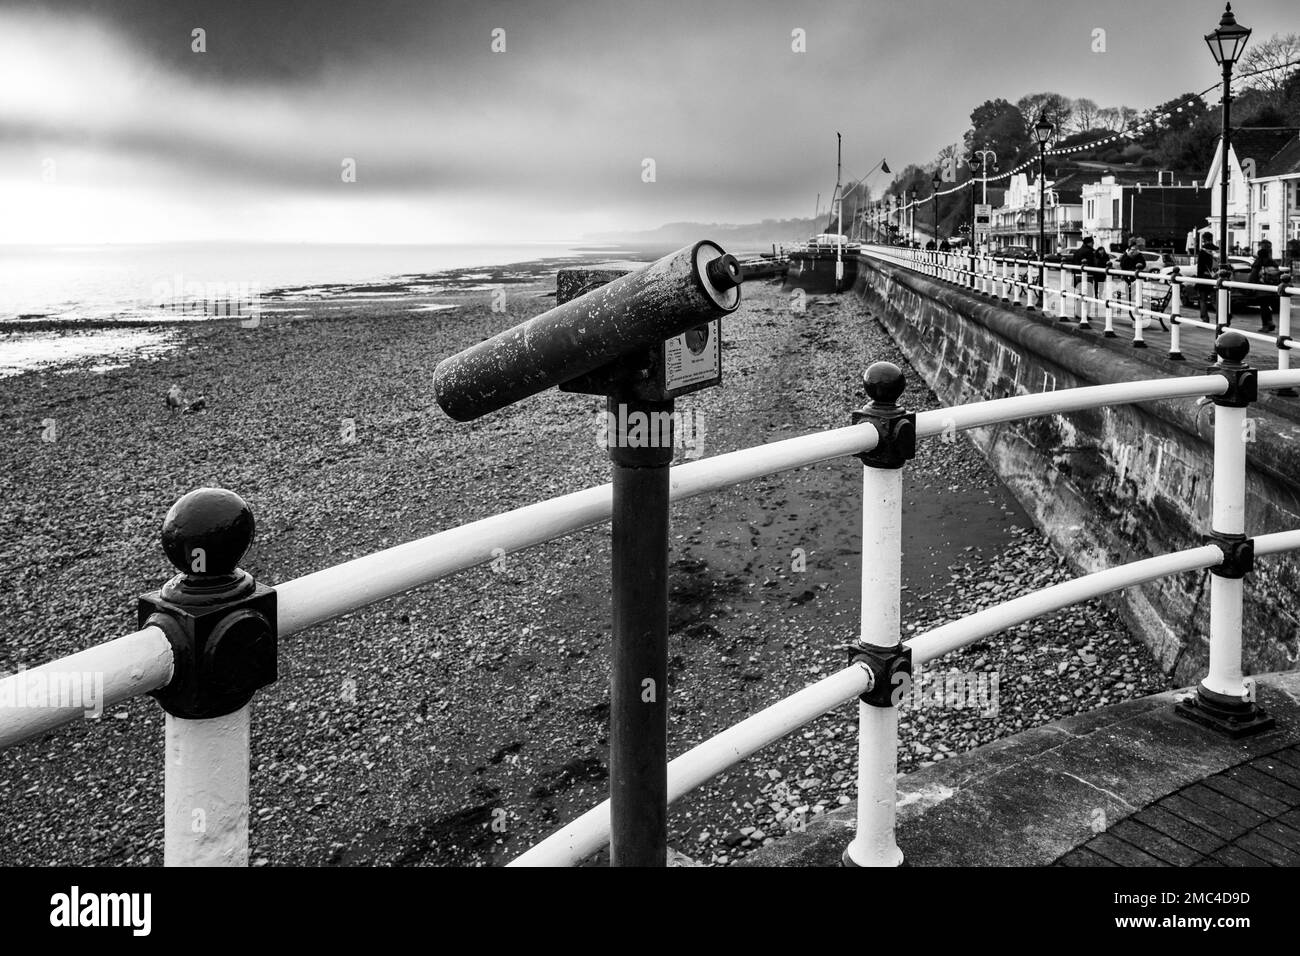 Esplanade du bord de mer, Penarth. Point de vue sur la mer (Canal de Bristol). Matin d'hiver. Ciel gris. Ambiance vintage B&W. Banque D'Images